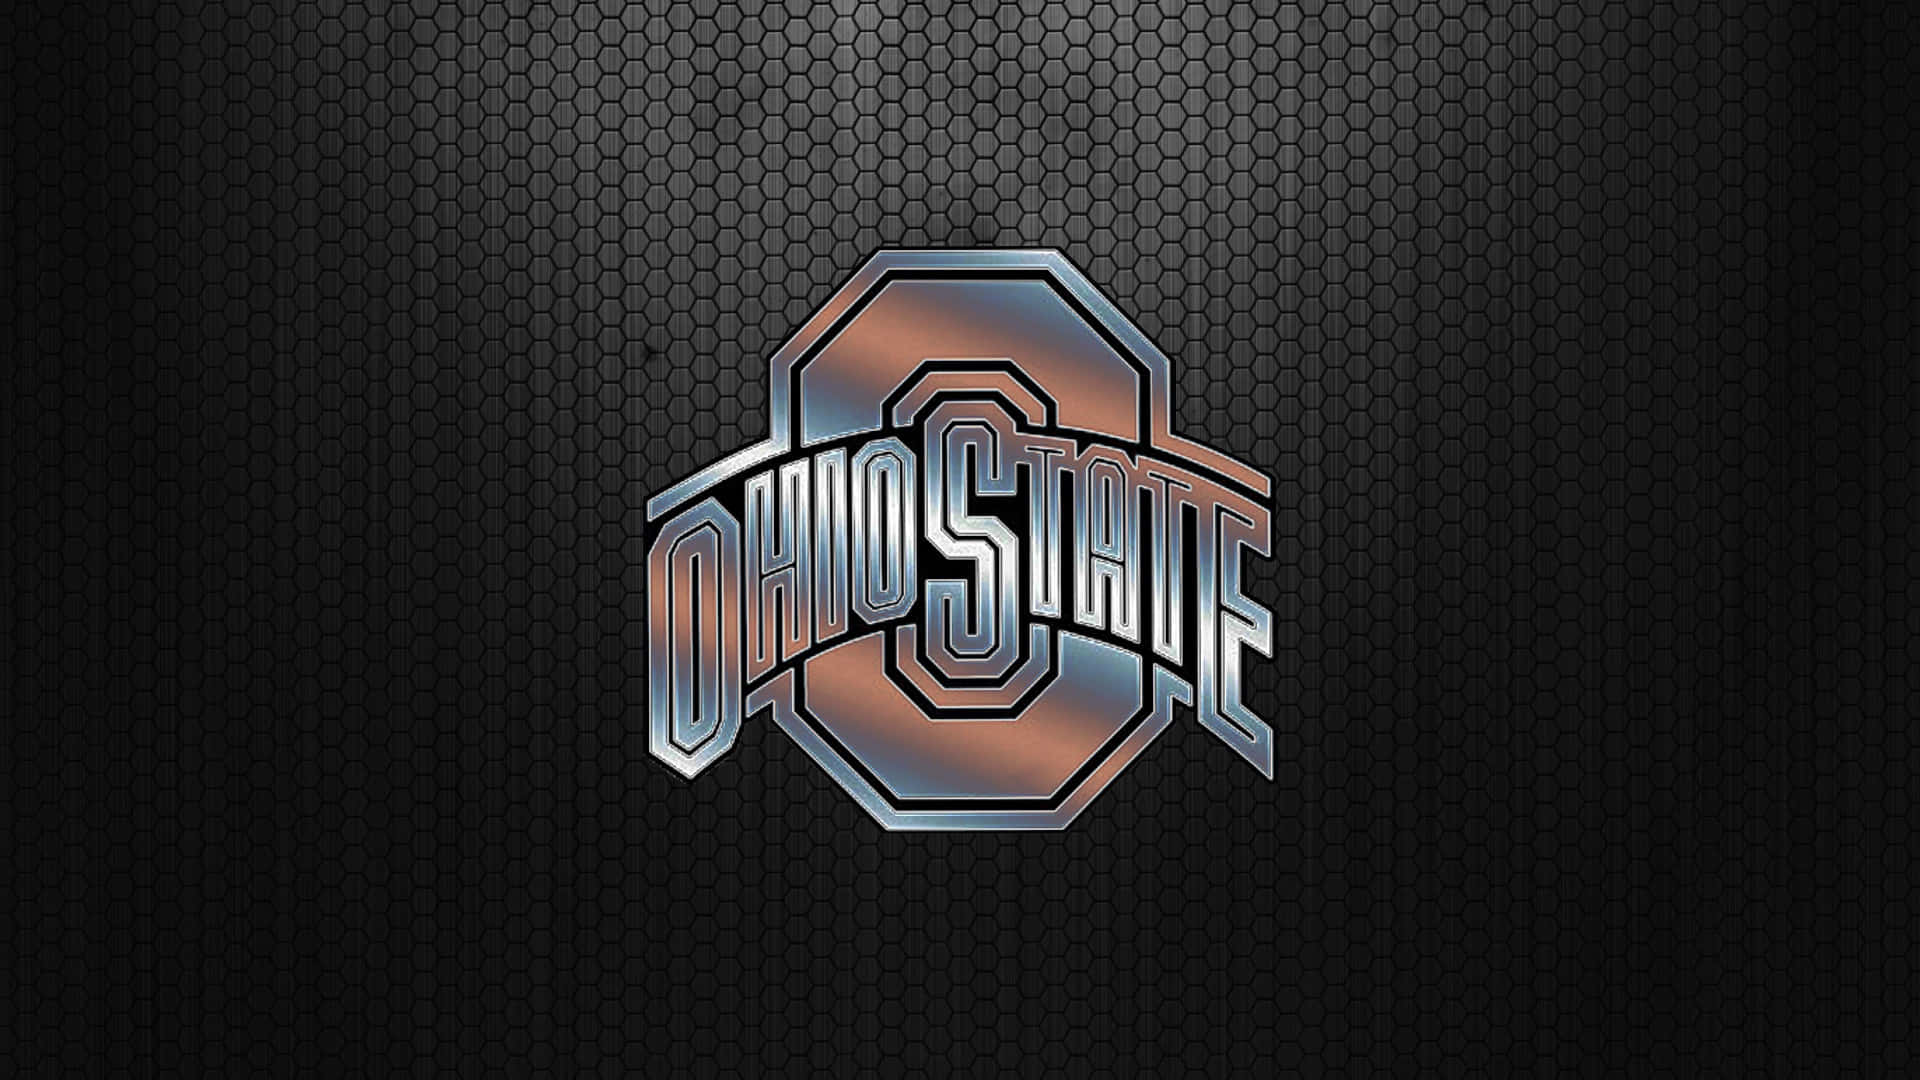 Ohiostate-logotypen På En Svart Bakgrund. Wallpaper